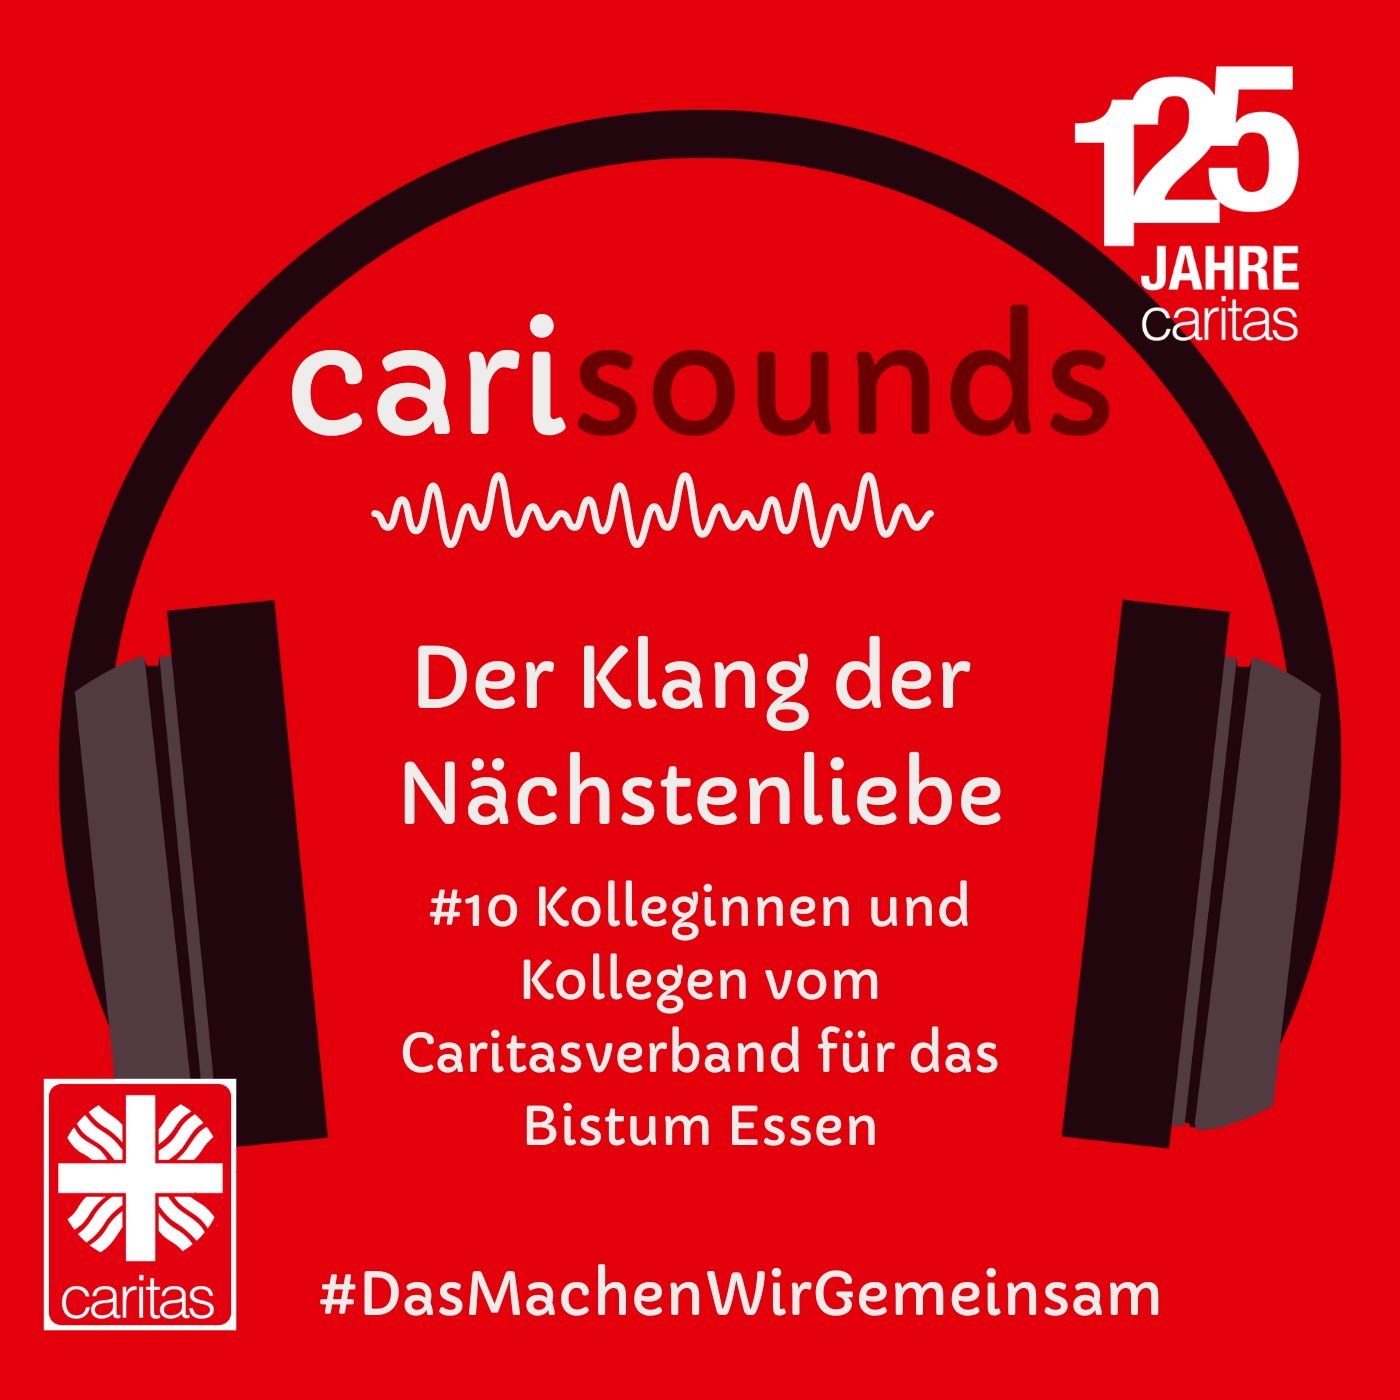 #10 carisounds - Der Klang der Nächstenliebe - Kolleginnen und Kollegen vom Caritasverband für das Bistum Essen